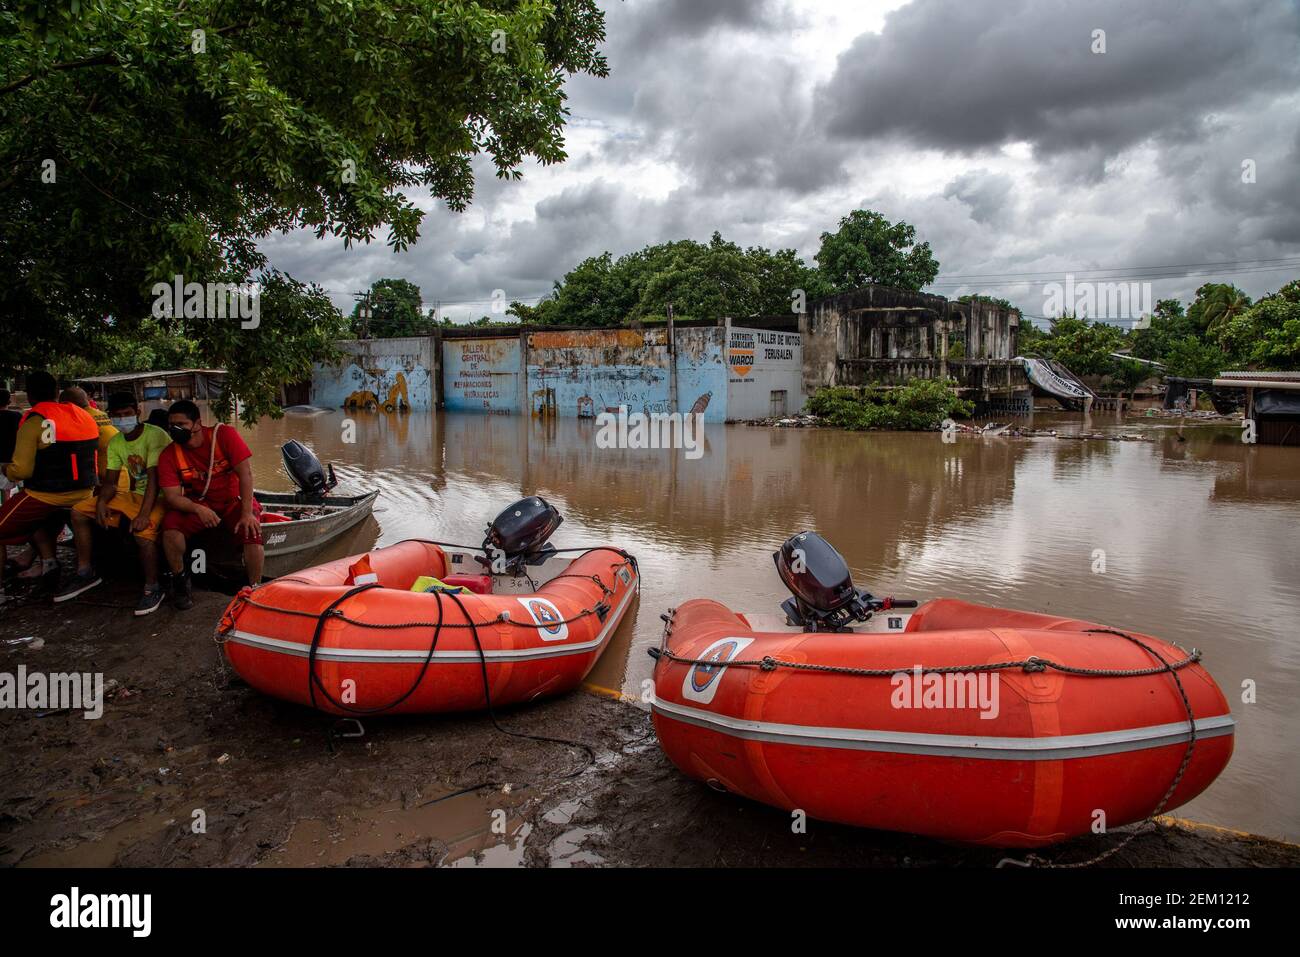 Los botes de rescate y la tripulación esperan en las orillas de la  carretera inundada en el camino a la Lima. El huracán Iota azotó la costa  nicaragüense el 16 de noviembre